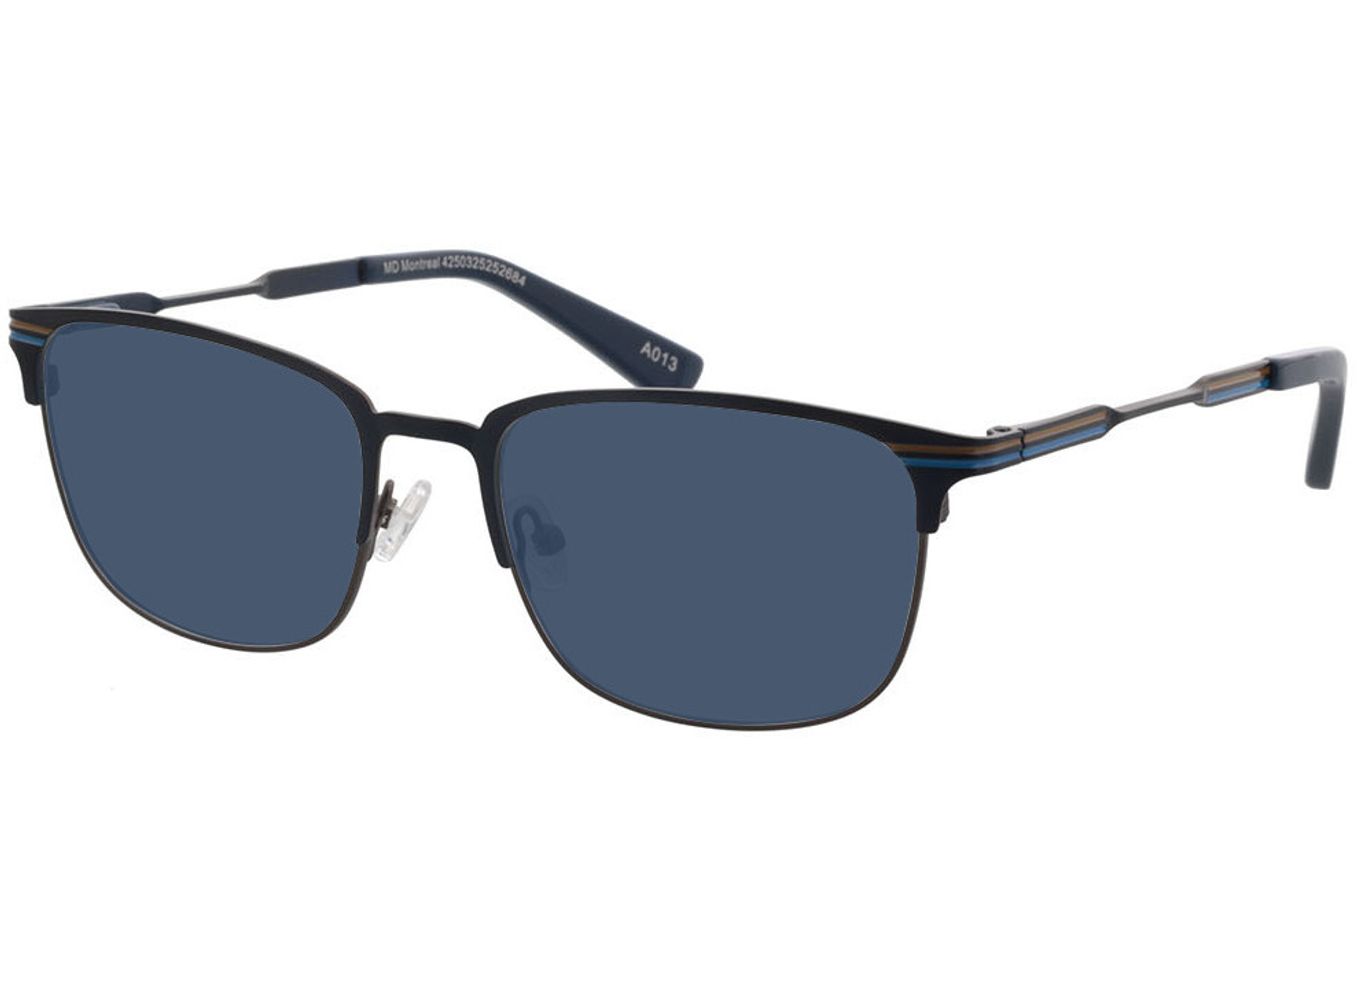 Montreal - blau Sonnenbrille ohne Sehstärke, Vollrand, Eckig von Brille24 Collection